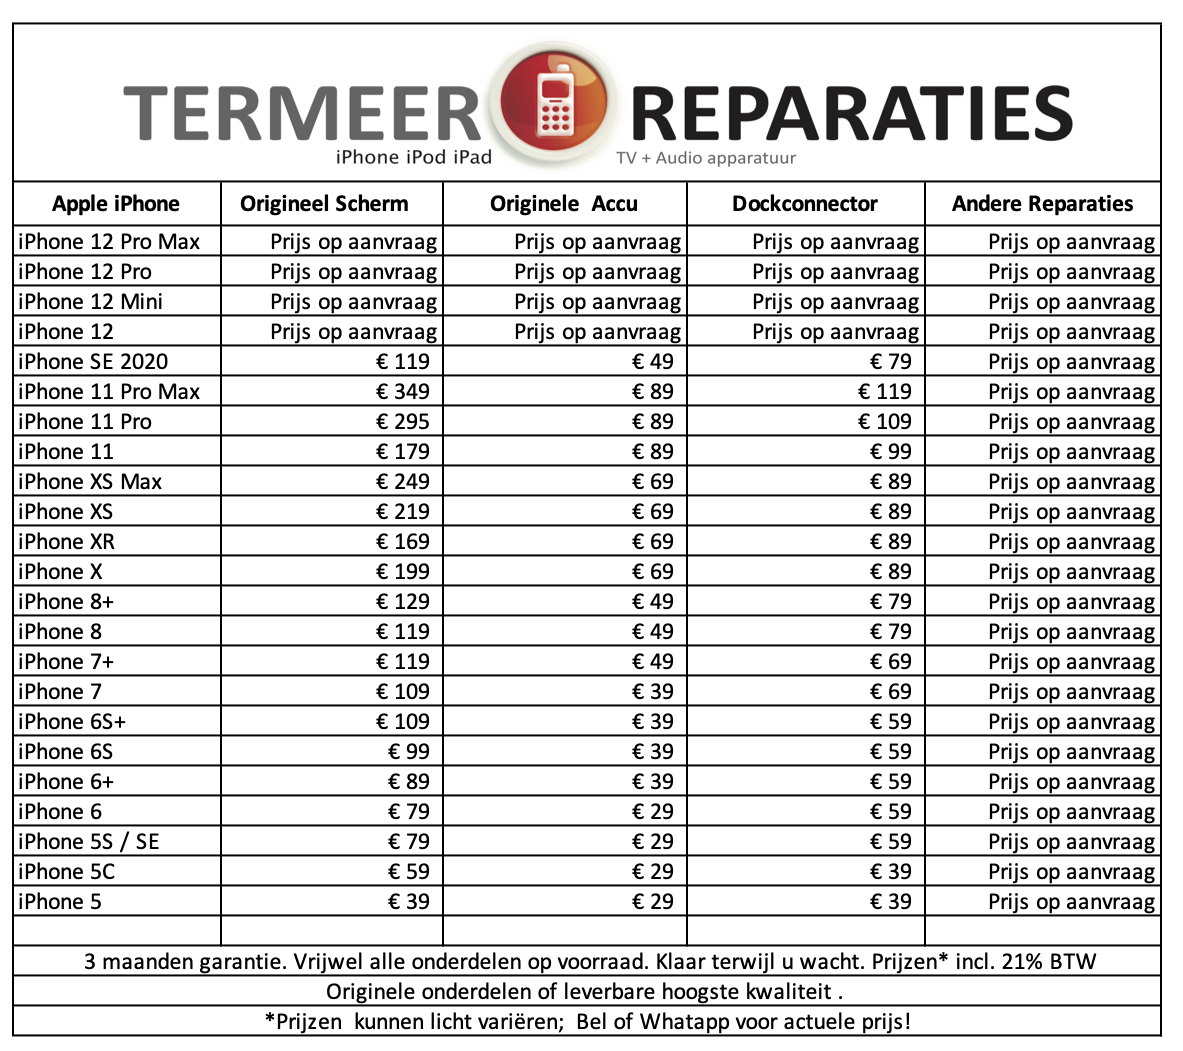 Termeer_Reparaties_iPhone